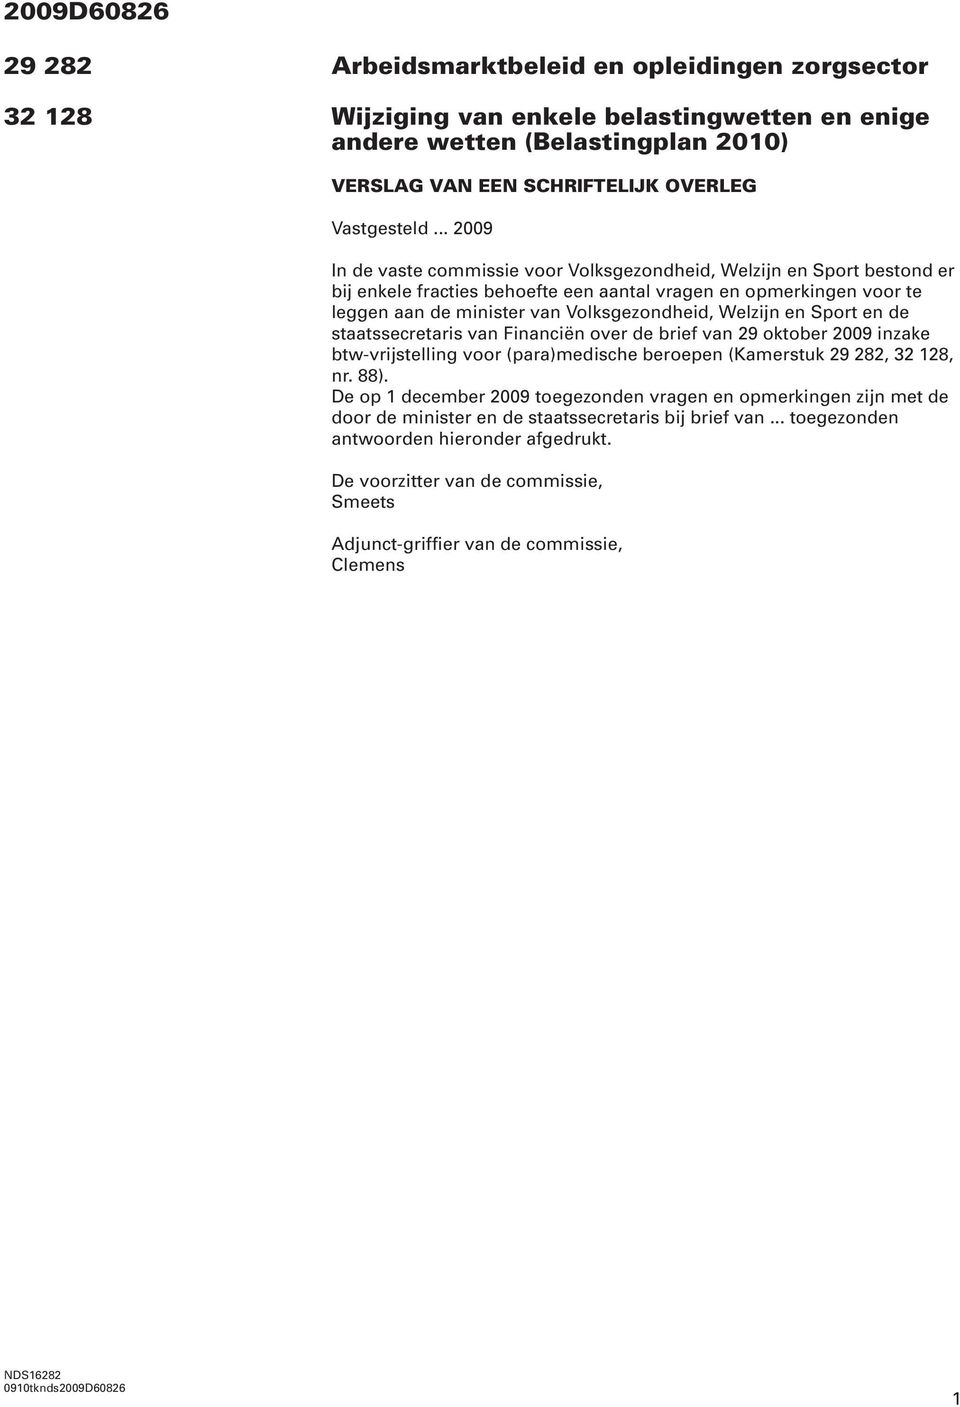 Welzijn en Sport en de staatssecretaris van Financiën over de brief van 29 oktober 2009 inzake btw-vrijstelling voor (para)medische beroepen (Kamerstuk 29 282, 32 128, nr. 88).